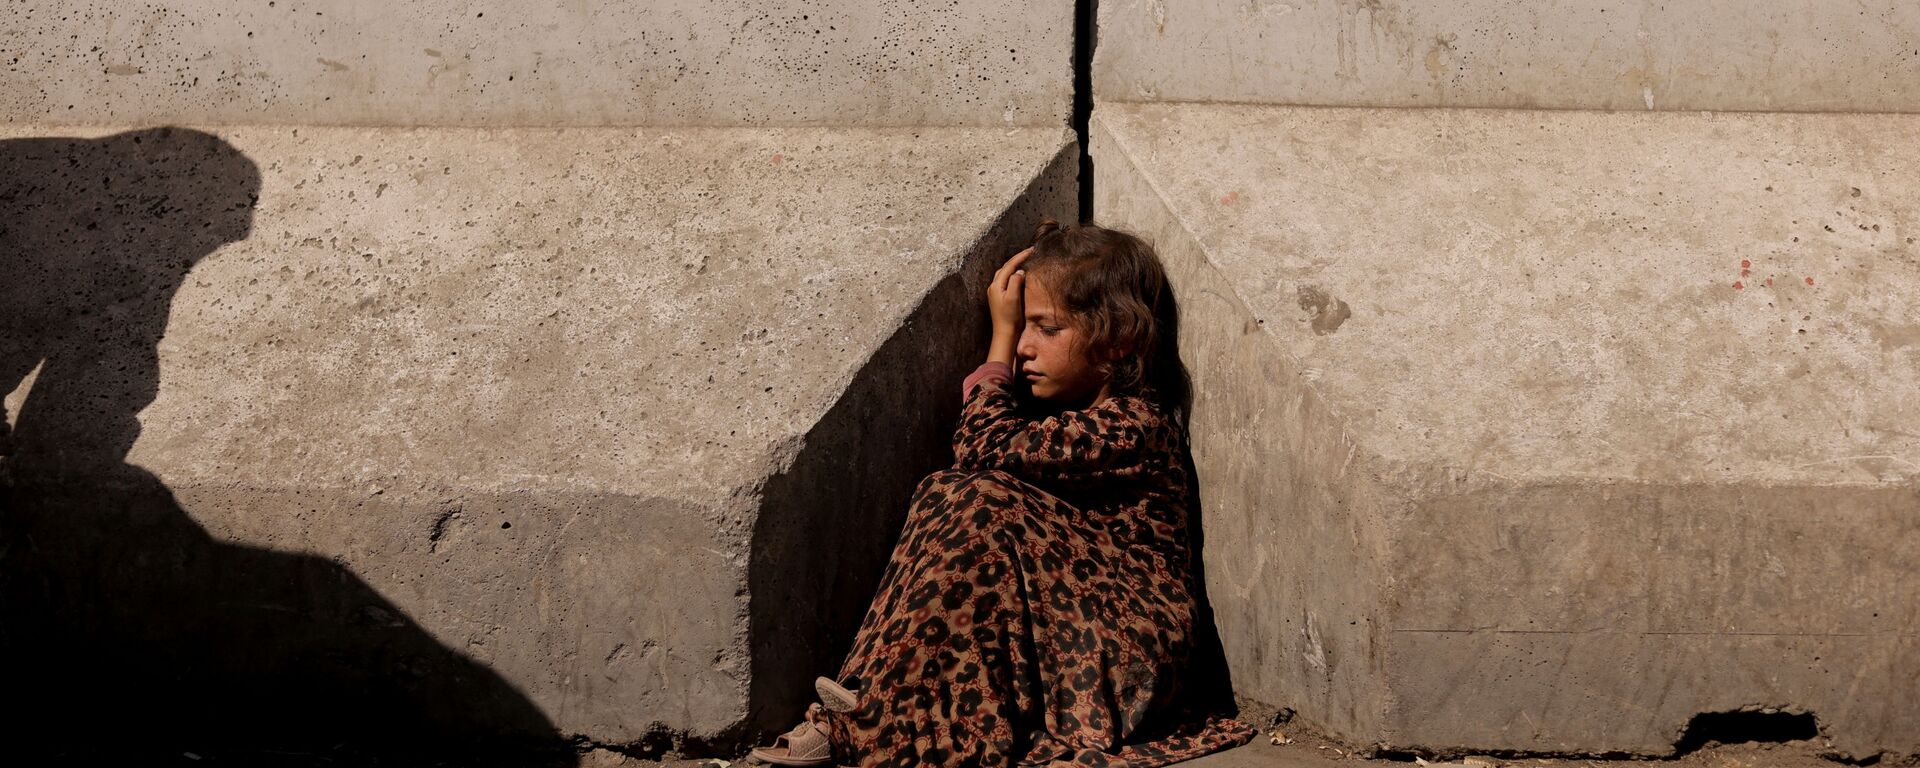 Девочка между бетонными заграждениями в Кабуле - Sputnik Тоҷикистон, 1920, 23.10.2021